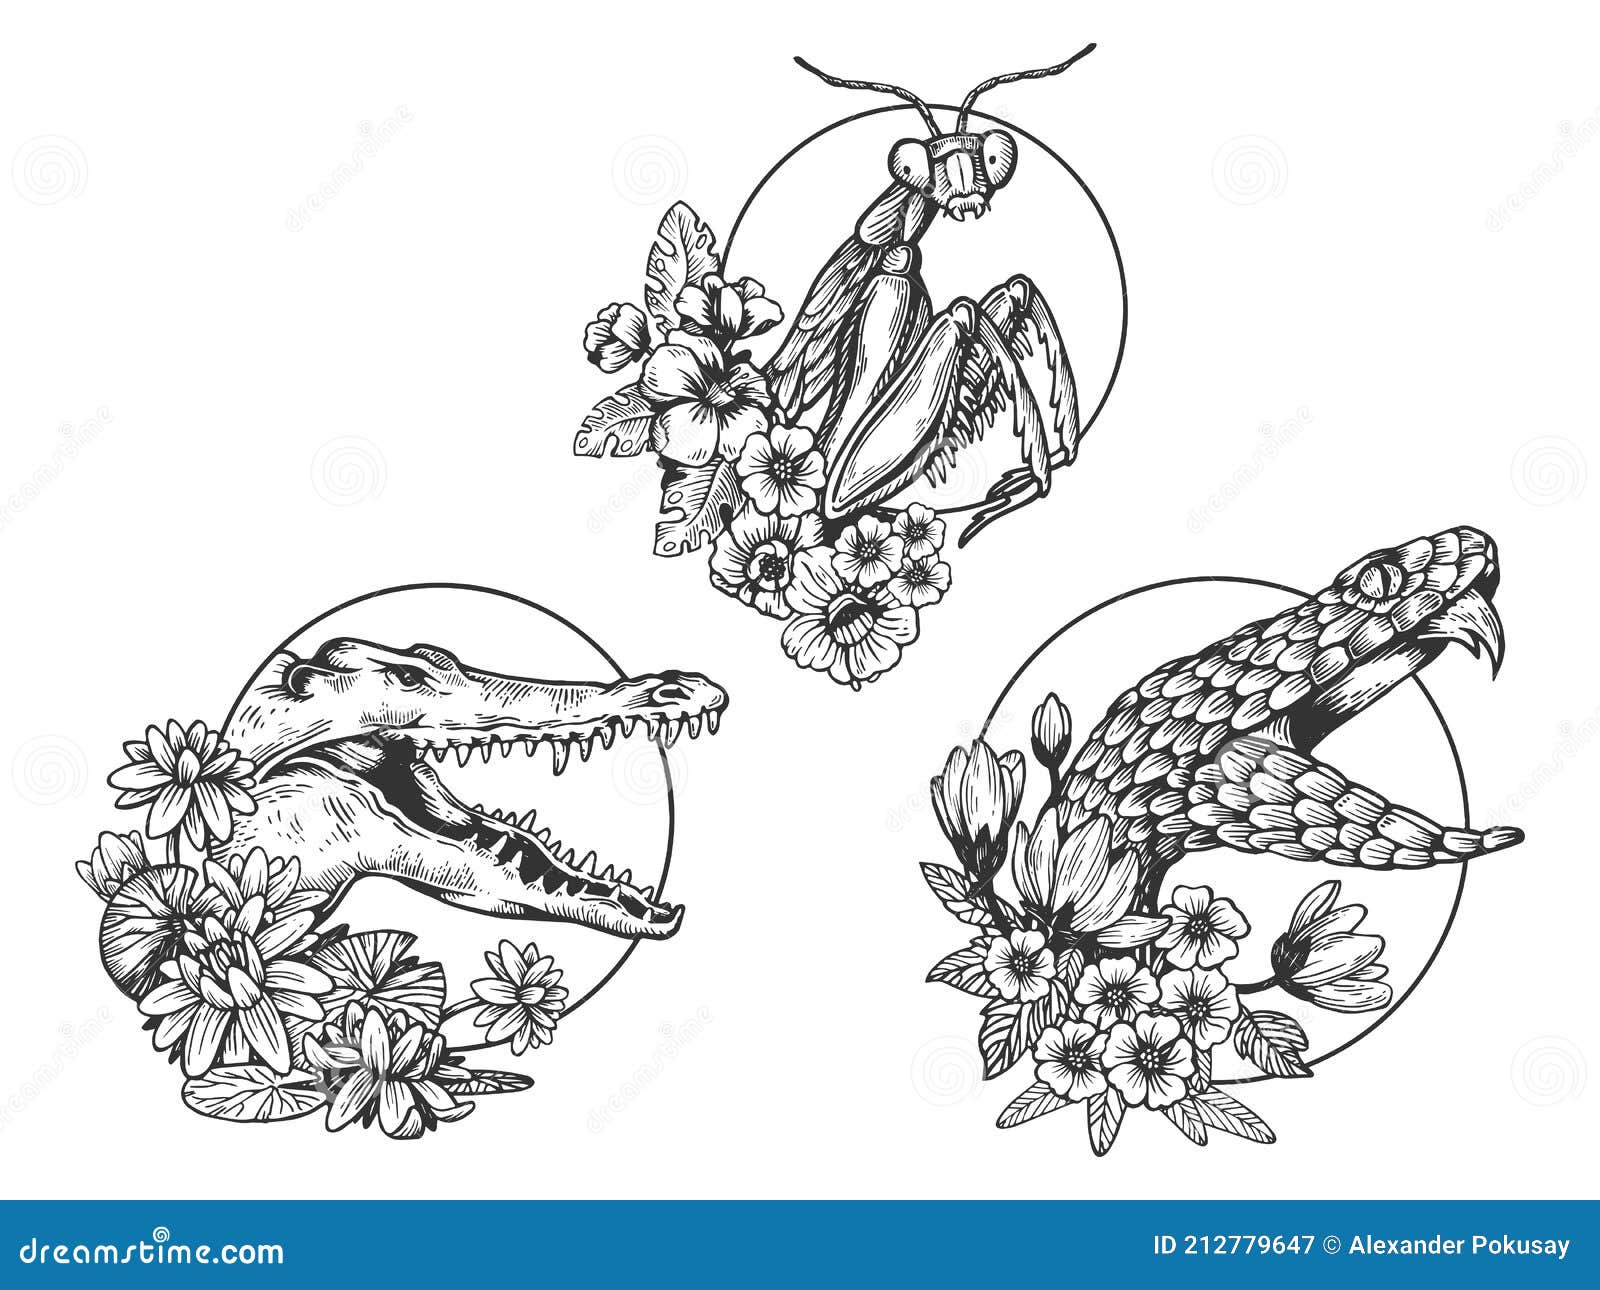 Vectores De Boceto Animal De Cabeza De Cocodrilo De Serpiente Mantis  Ilustración del Vector - Ilustración de bosquejo, cocodrilo: 212779647